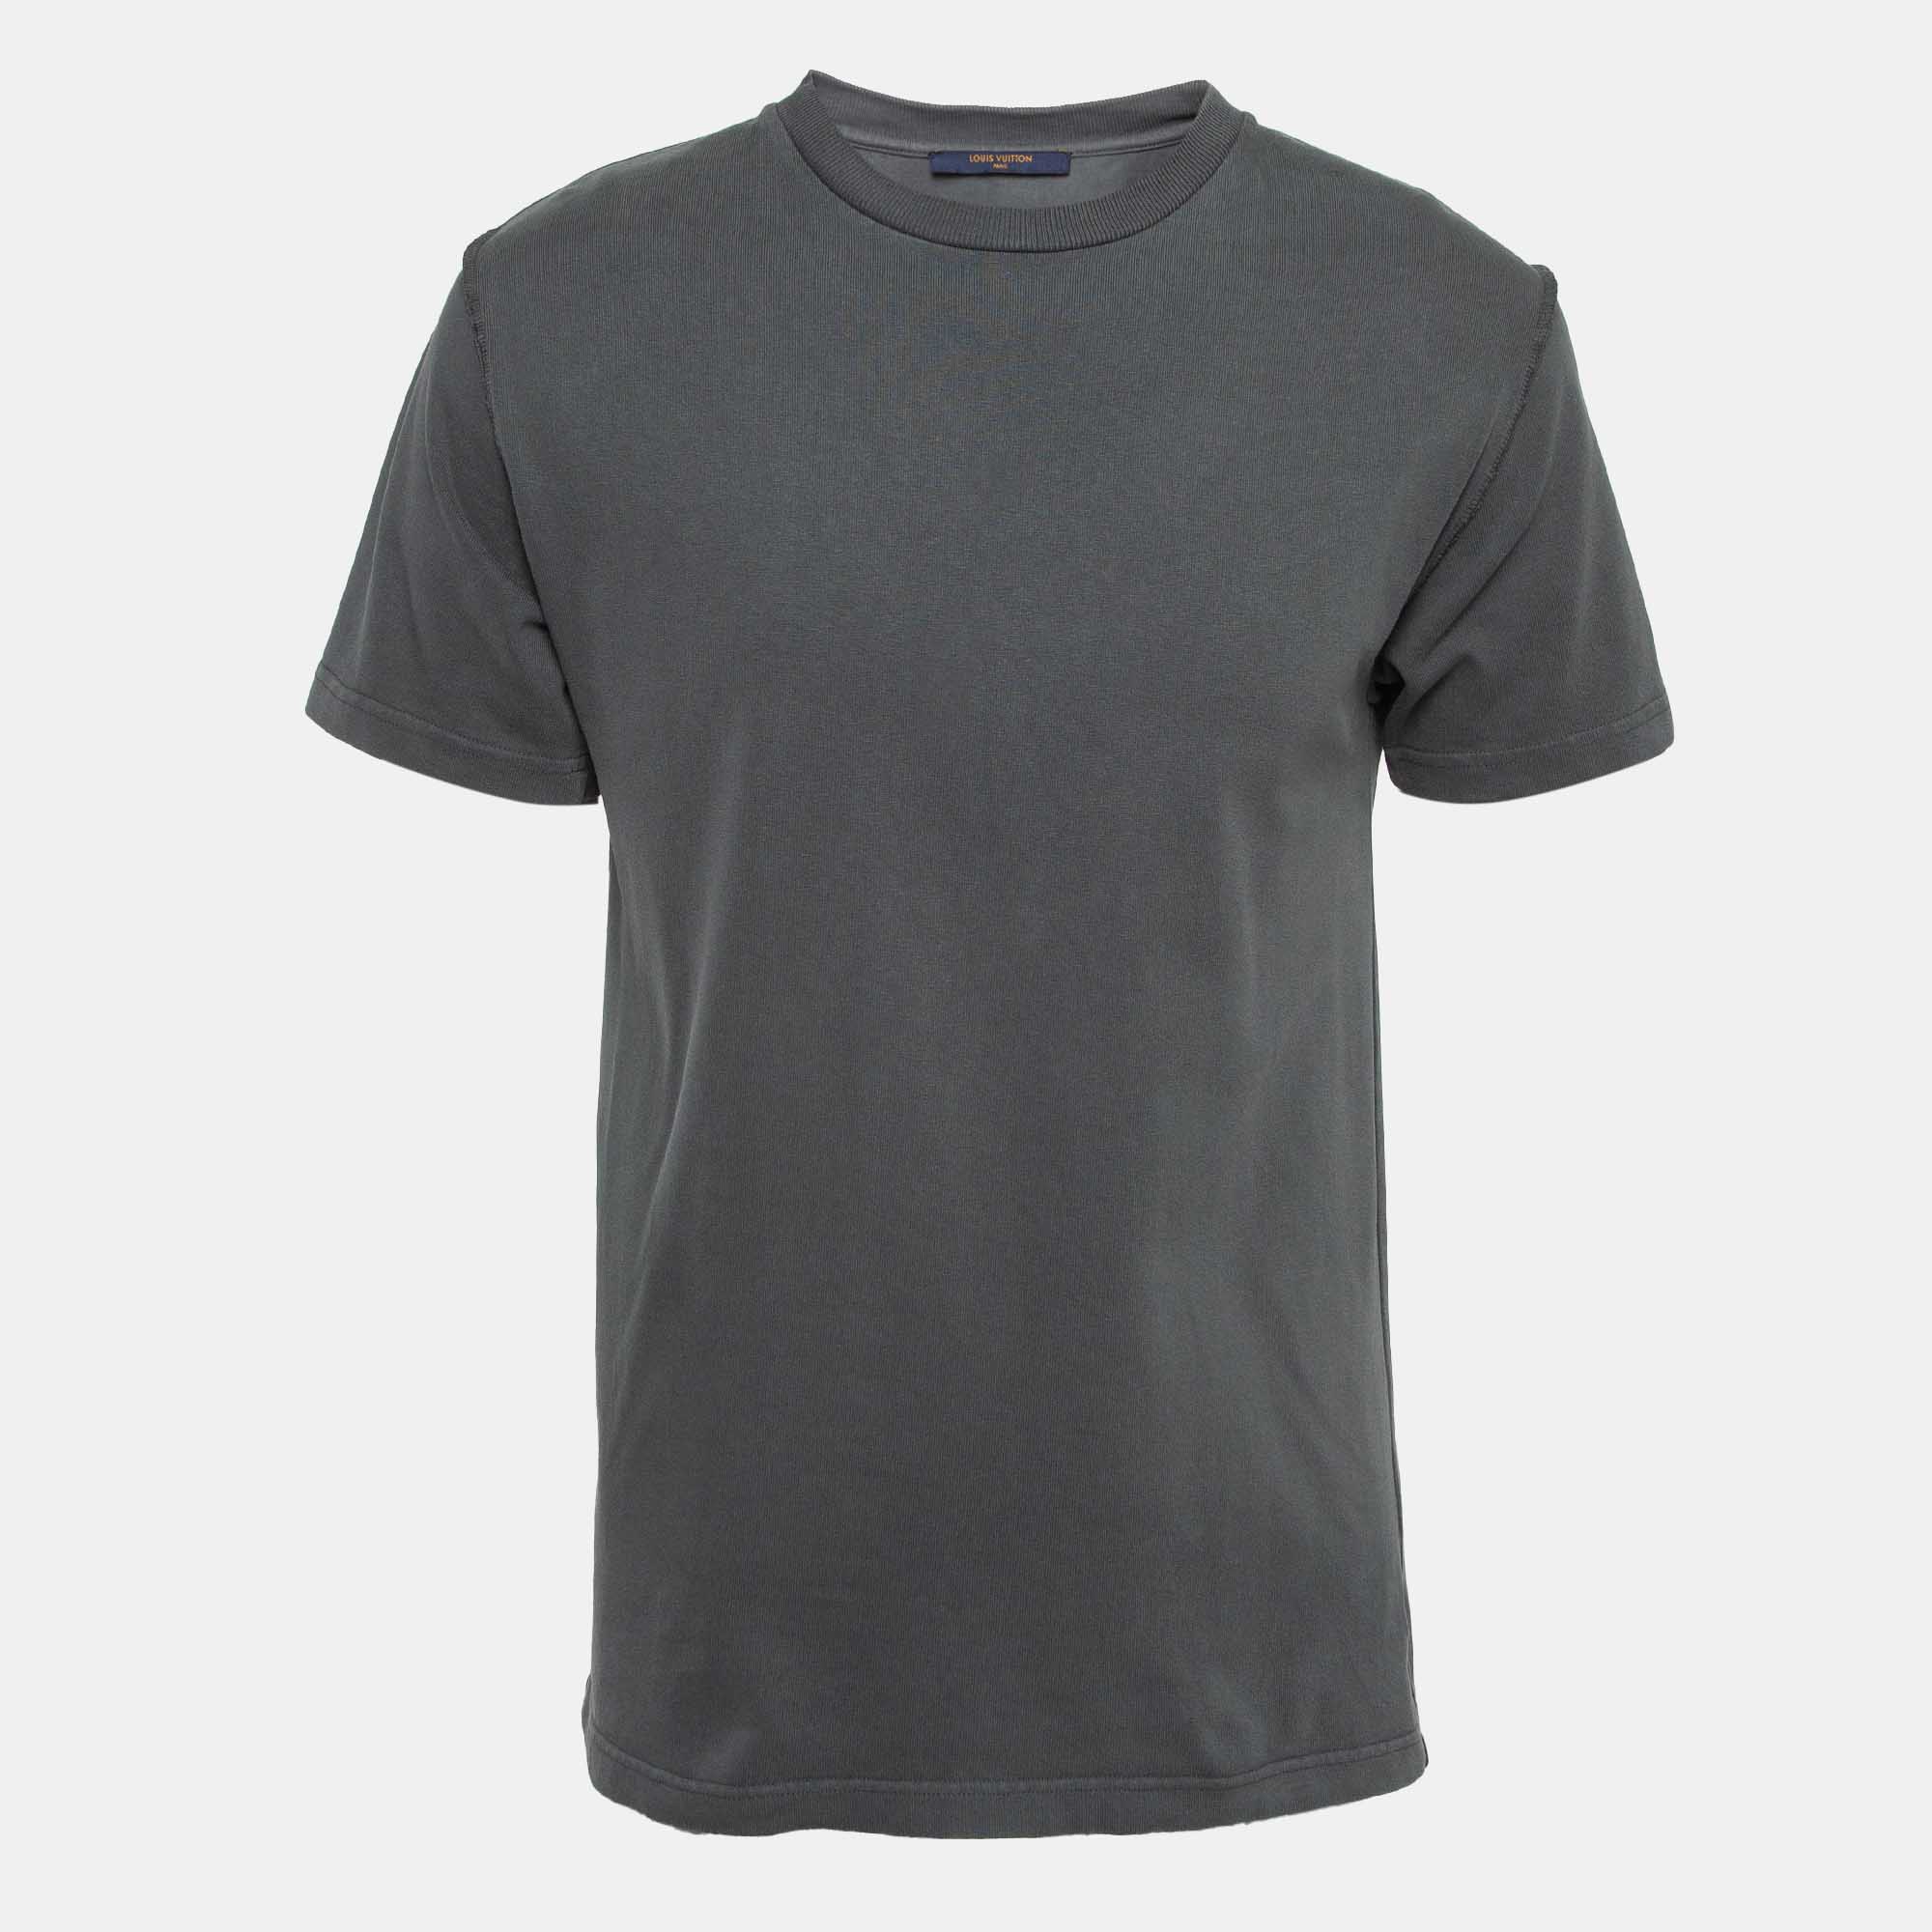 Louis vuitton grey cotton crew neck t-shirt s